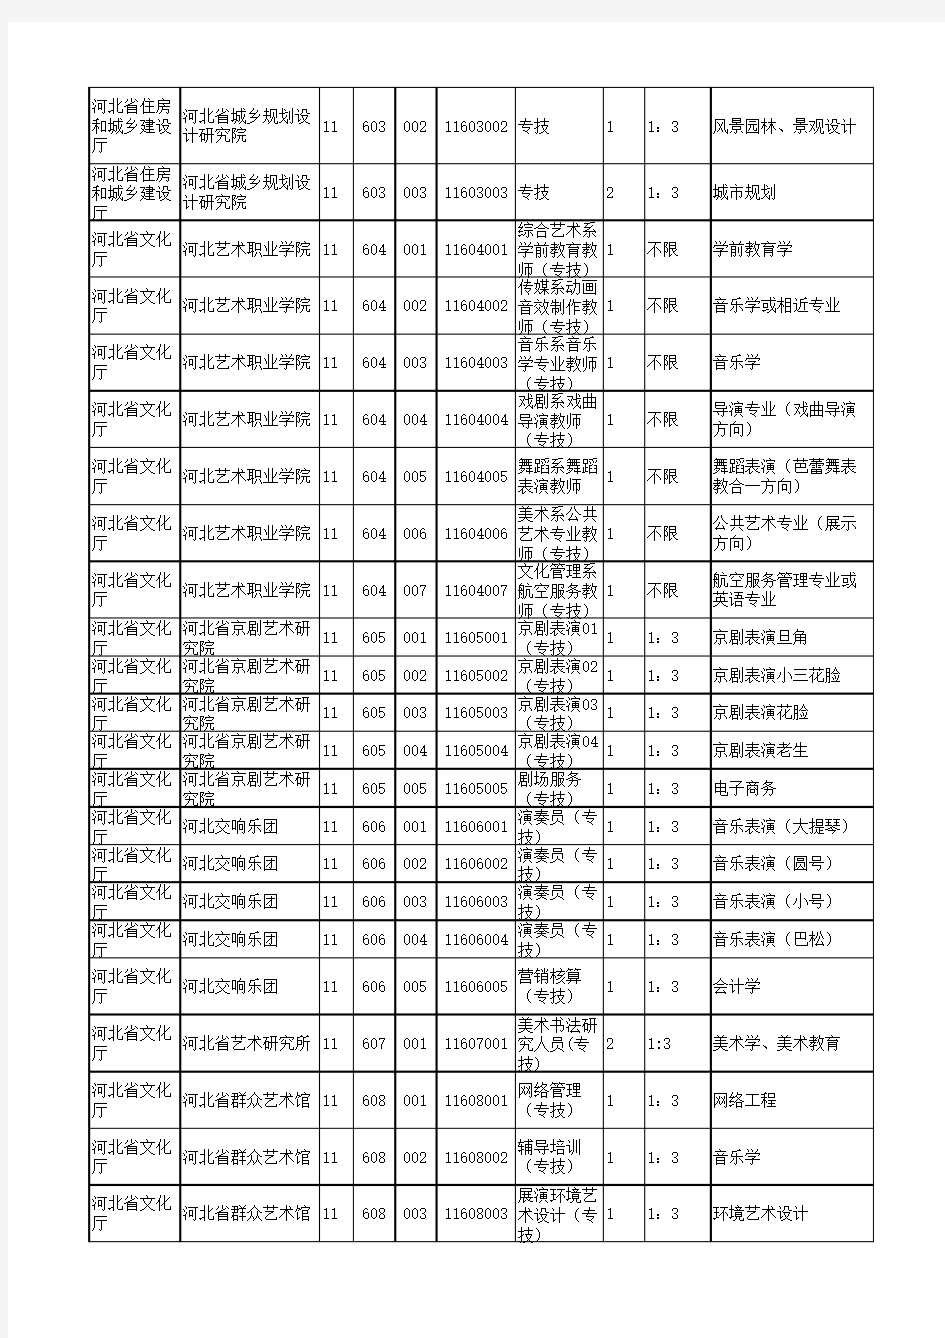 河北省省直事业单位公开招聘2015年单位招聘岗位信息表